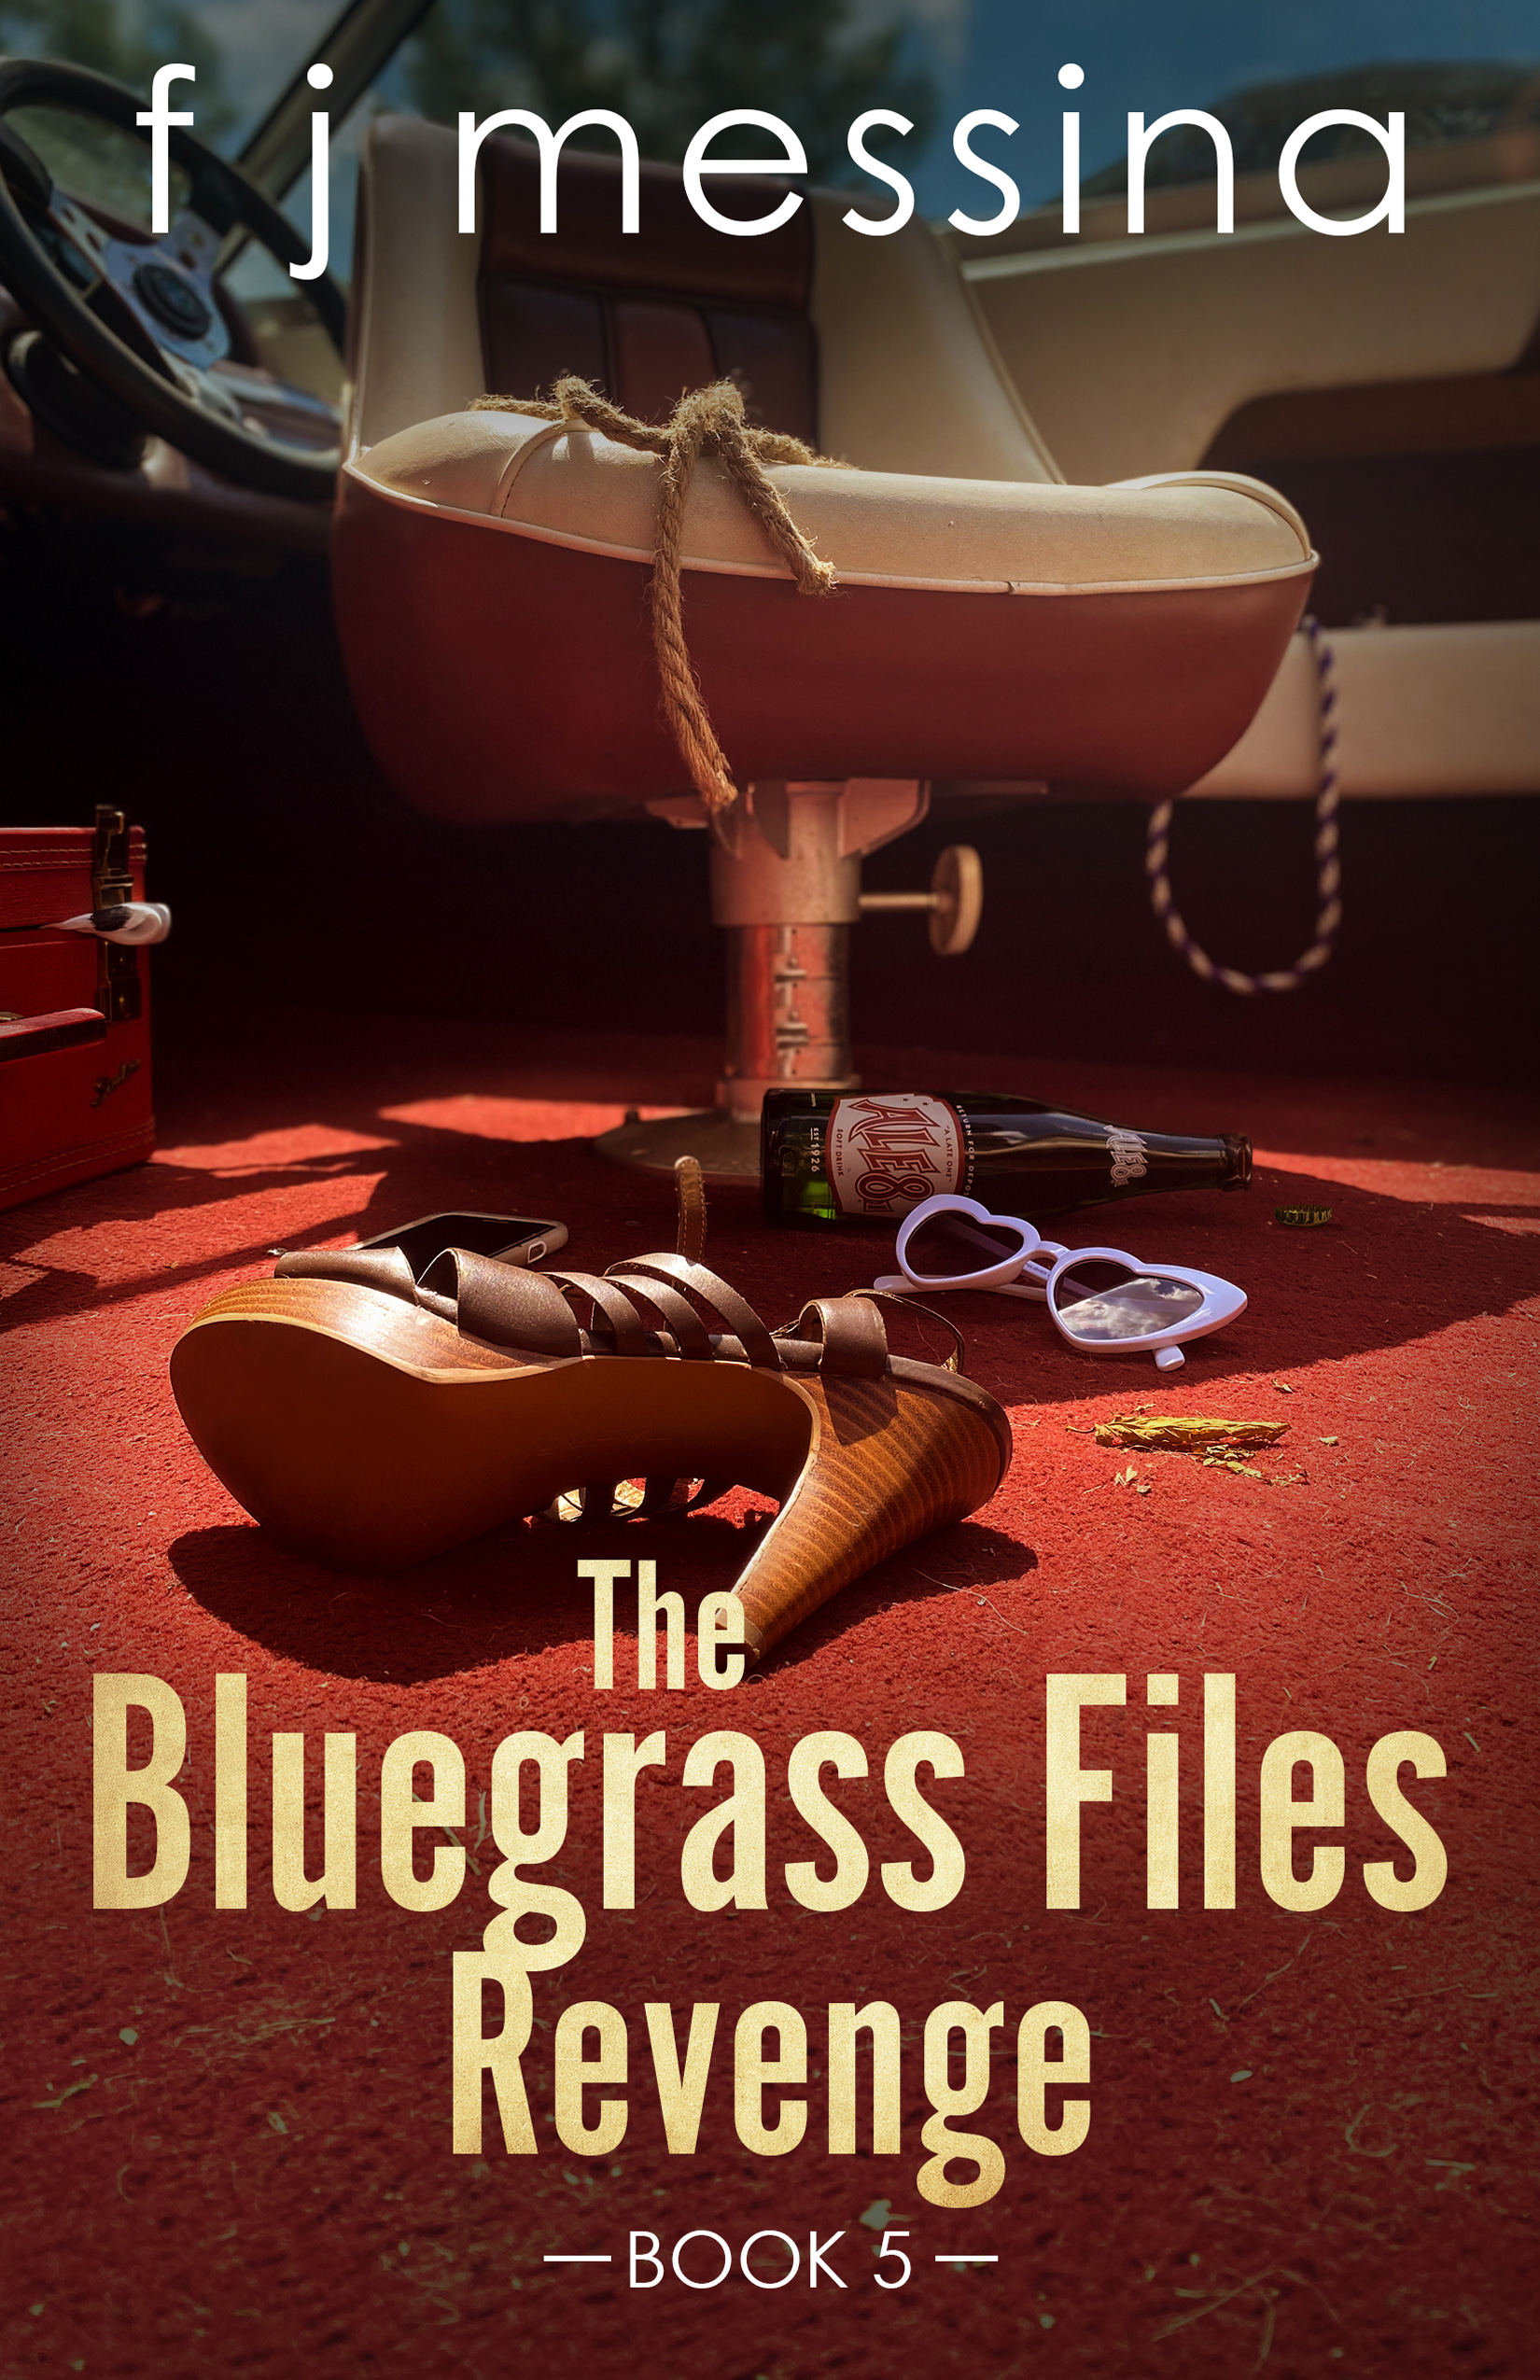 The Bluegrass Files: Revenge